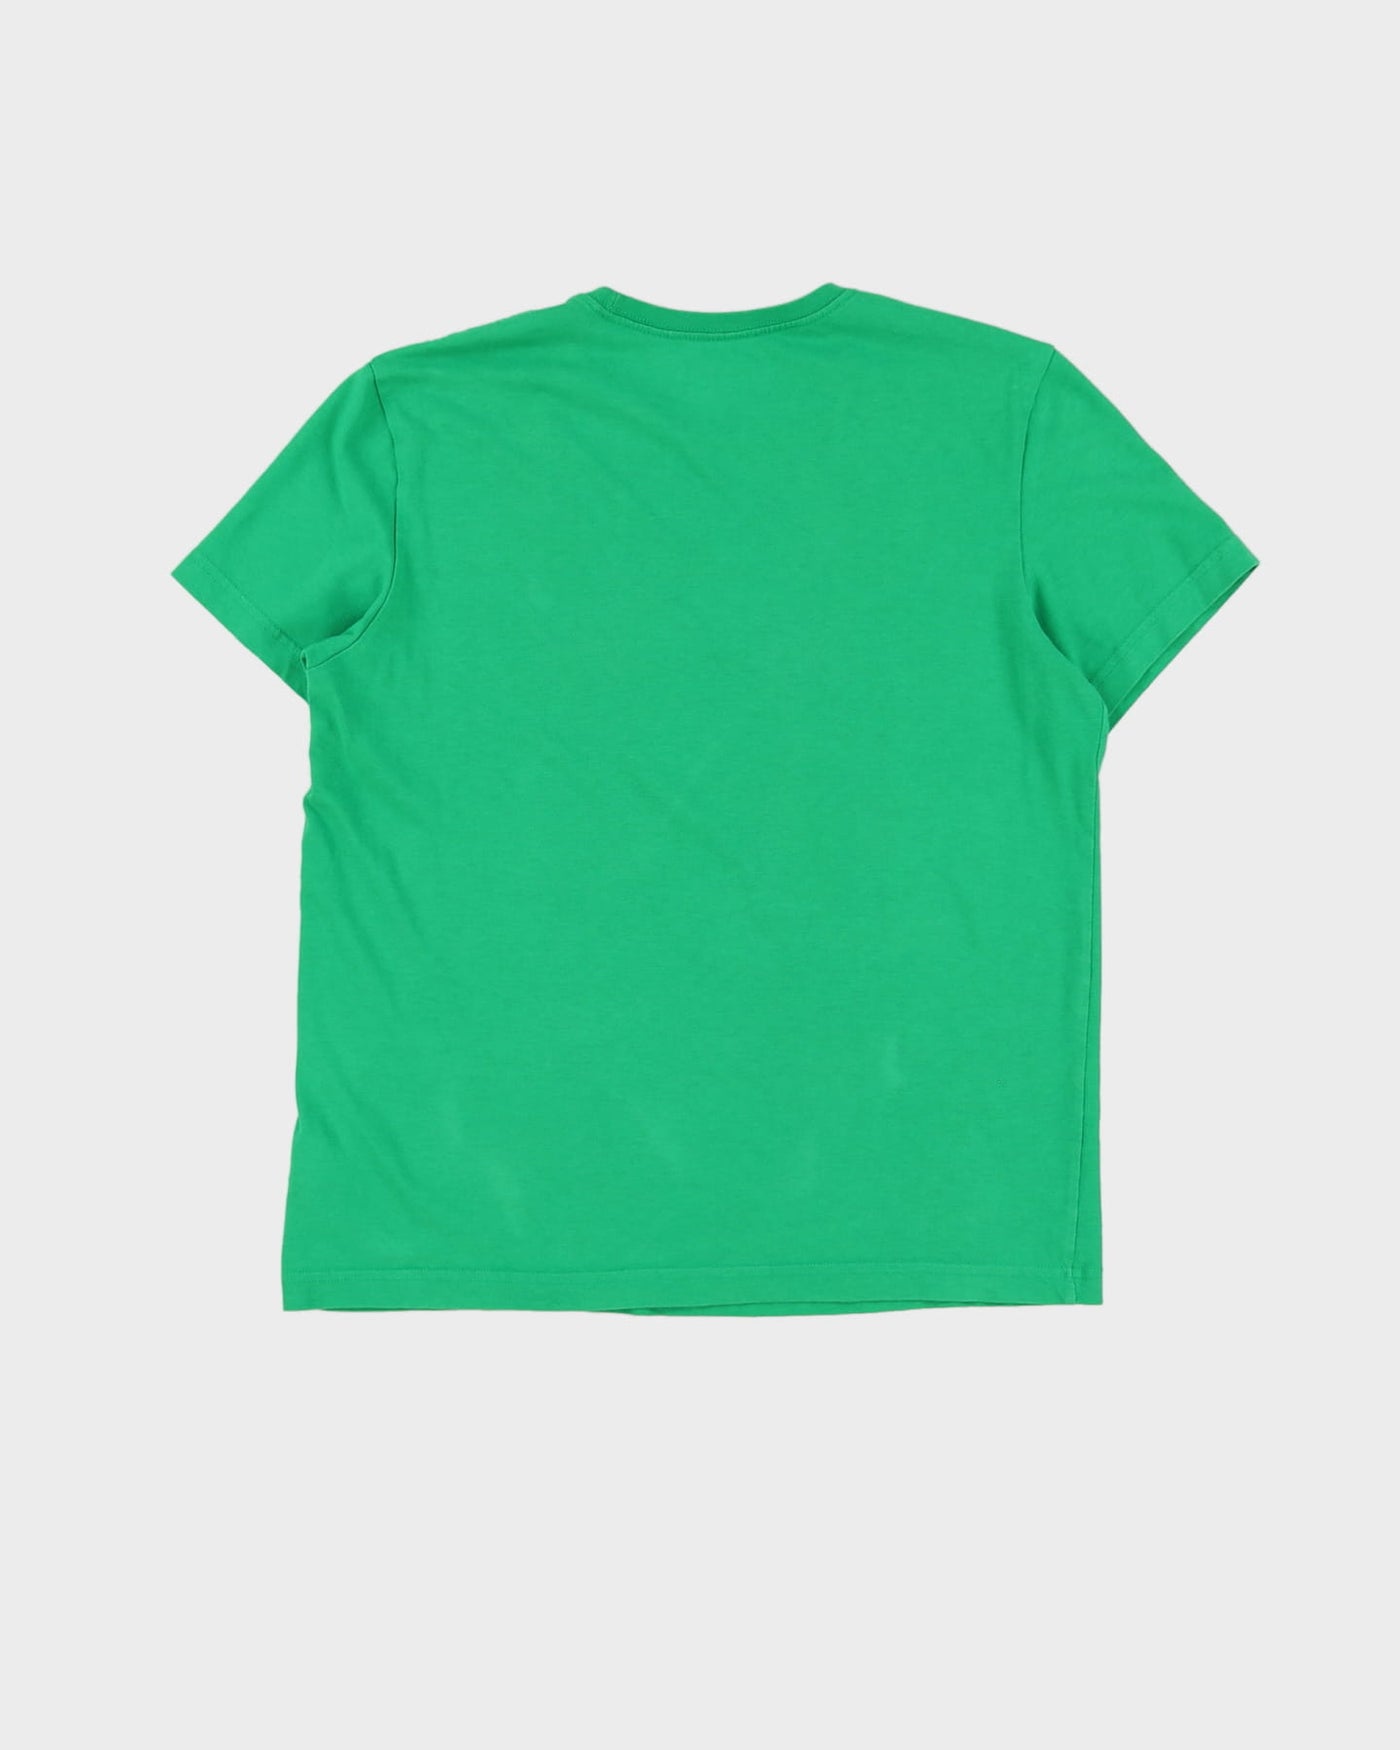 00s Hulk Green Marvel Adidas T-Shirt - L